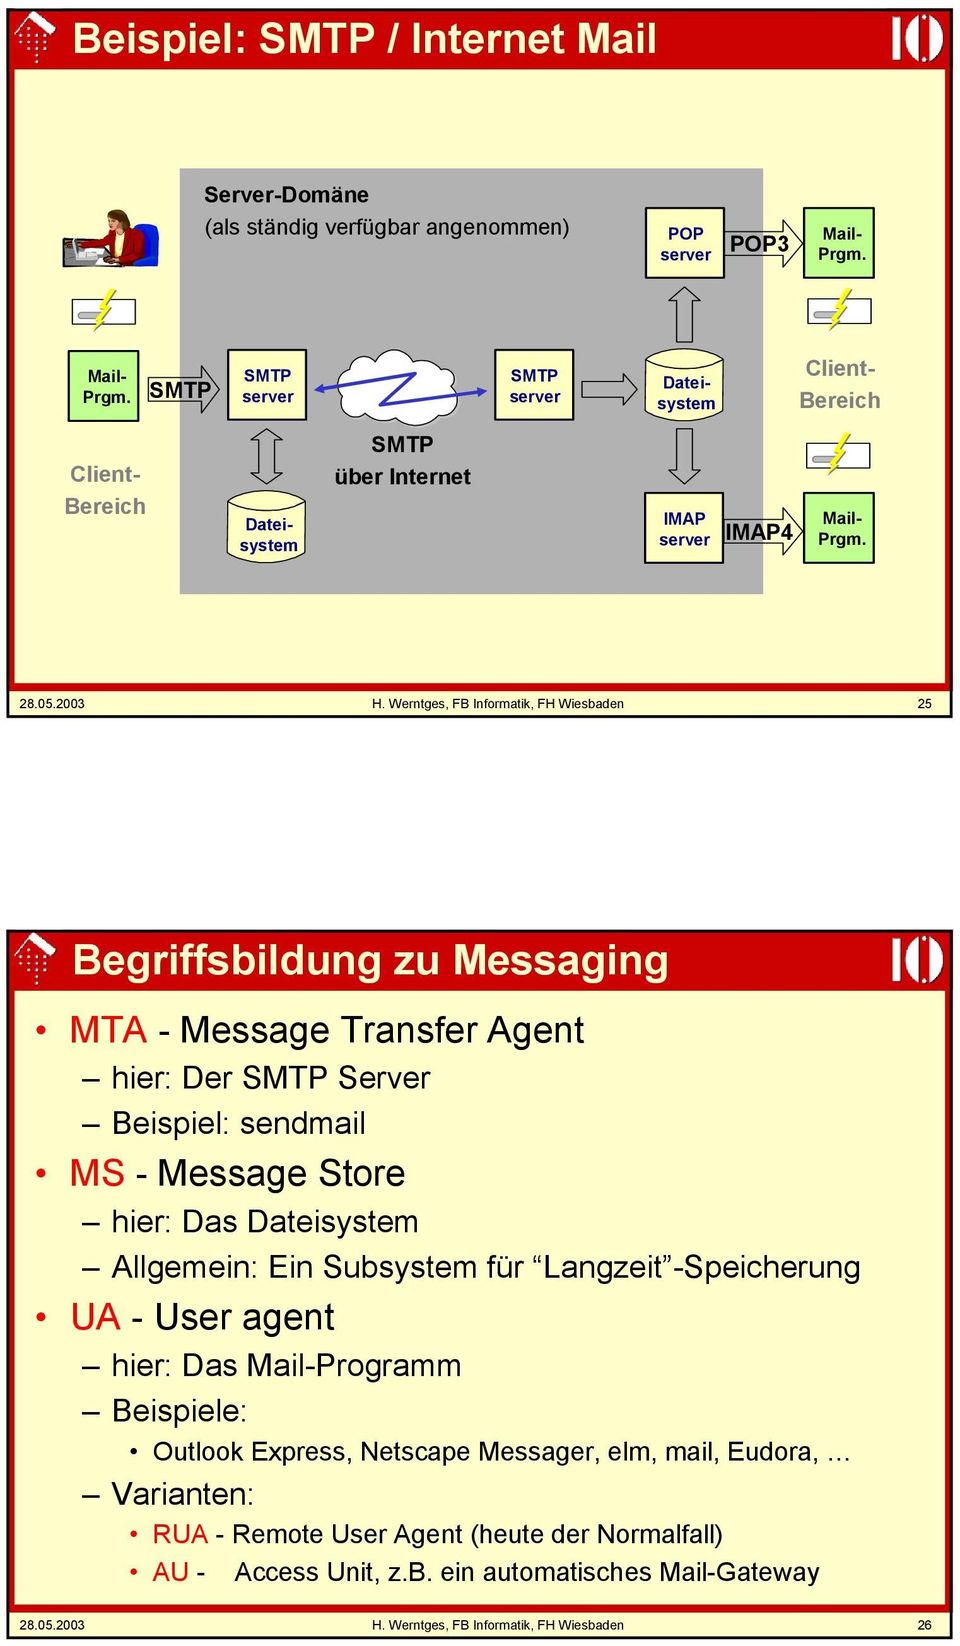 Werntges, FB Informatik, FH Wiesbaden 25 Begriffsbildung zu Messaging - Message Transfer Agent hier: Der SMTP Server Beispiel: sendmail MS - Message Store hier: Das Dateisystem Allgemein: Ein